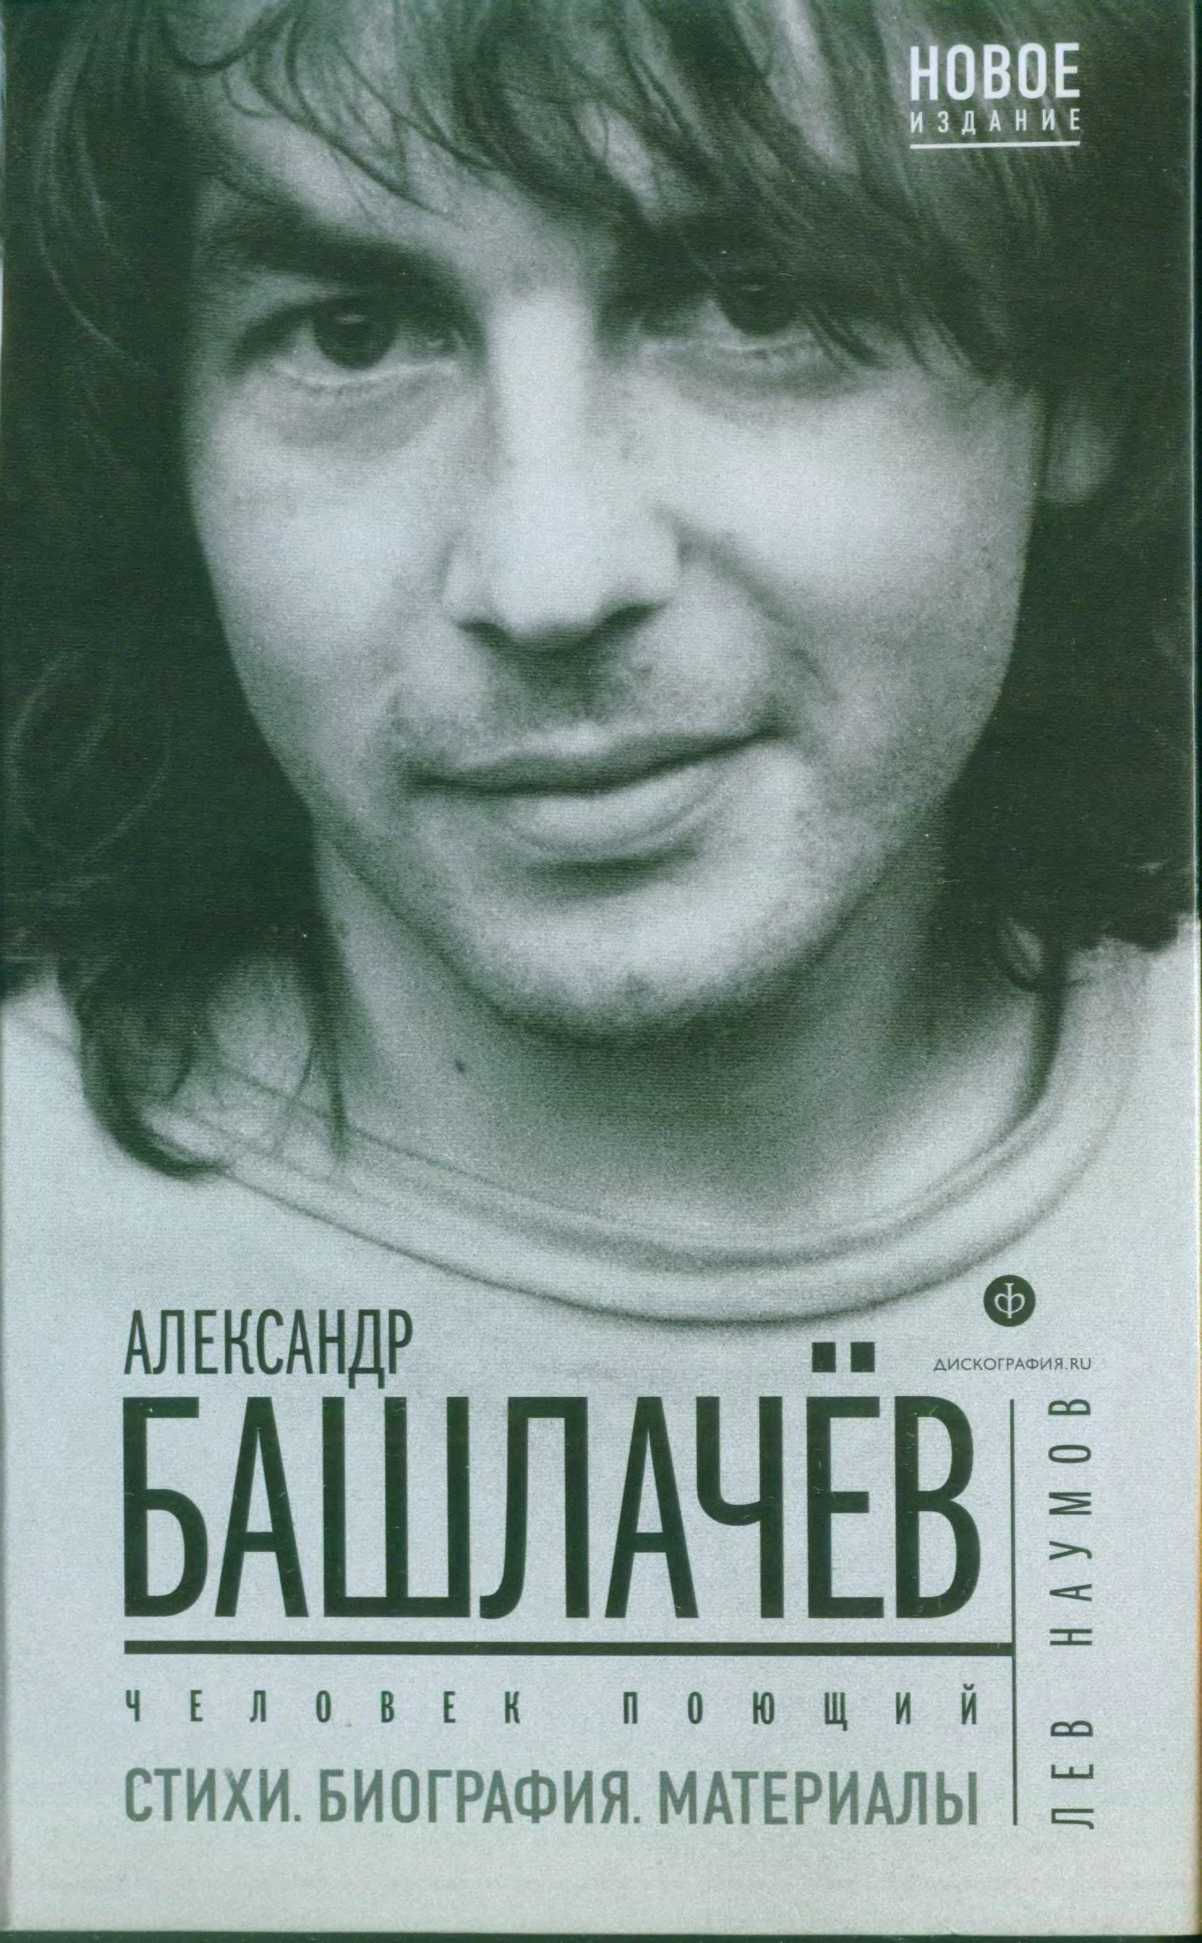 Человек поющий читать. Башлачёв 1988.